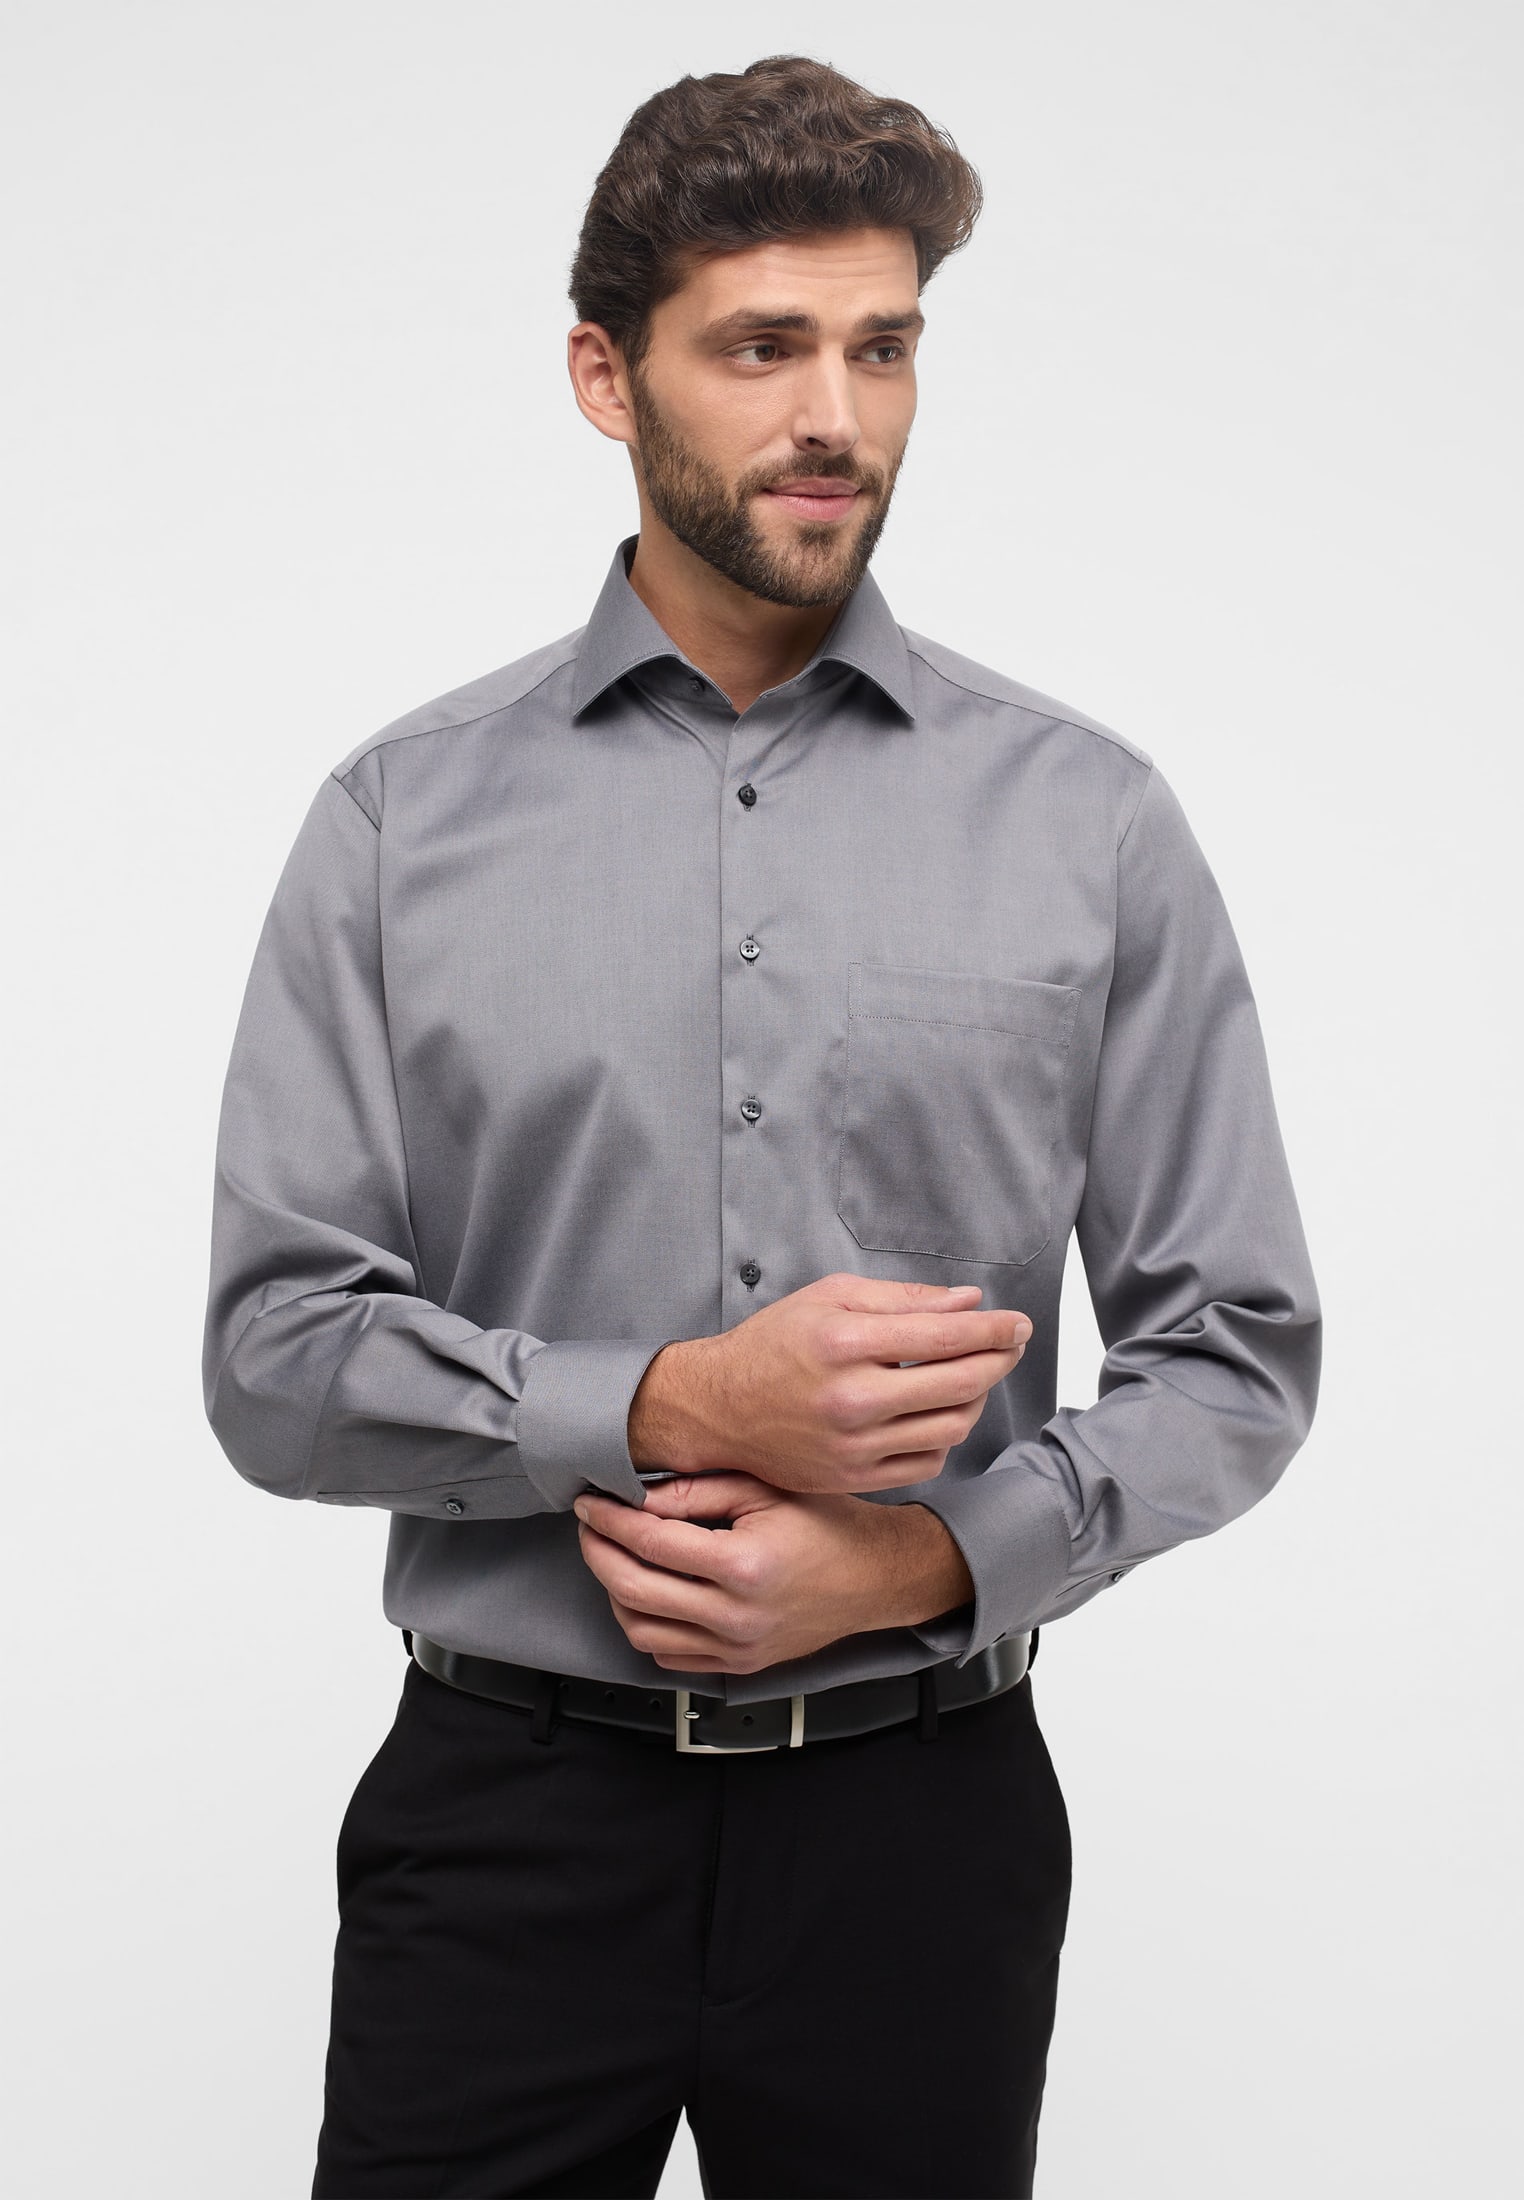 COMFORT FIT Cover grau unifarben Shirt in | Langarm | grau | 1SH05506-03-01-41-1/1 41 